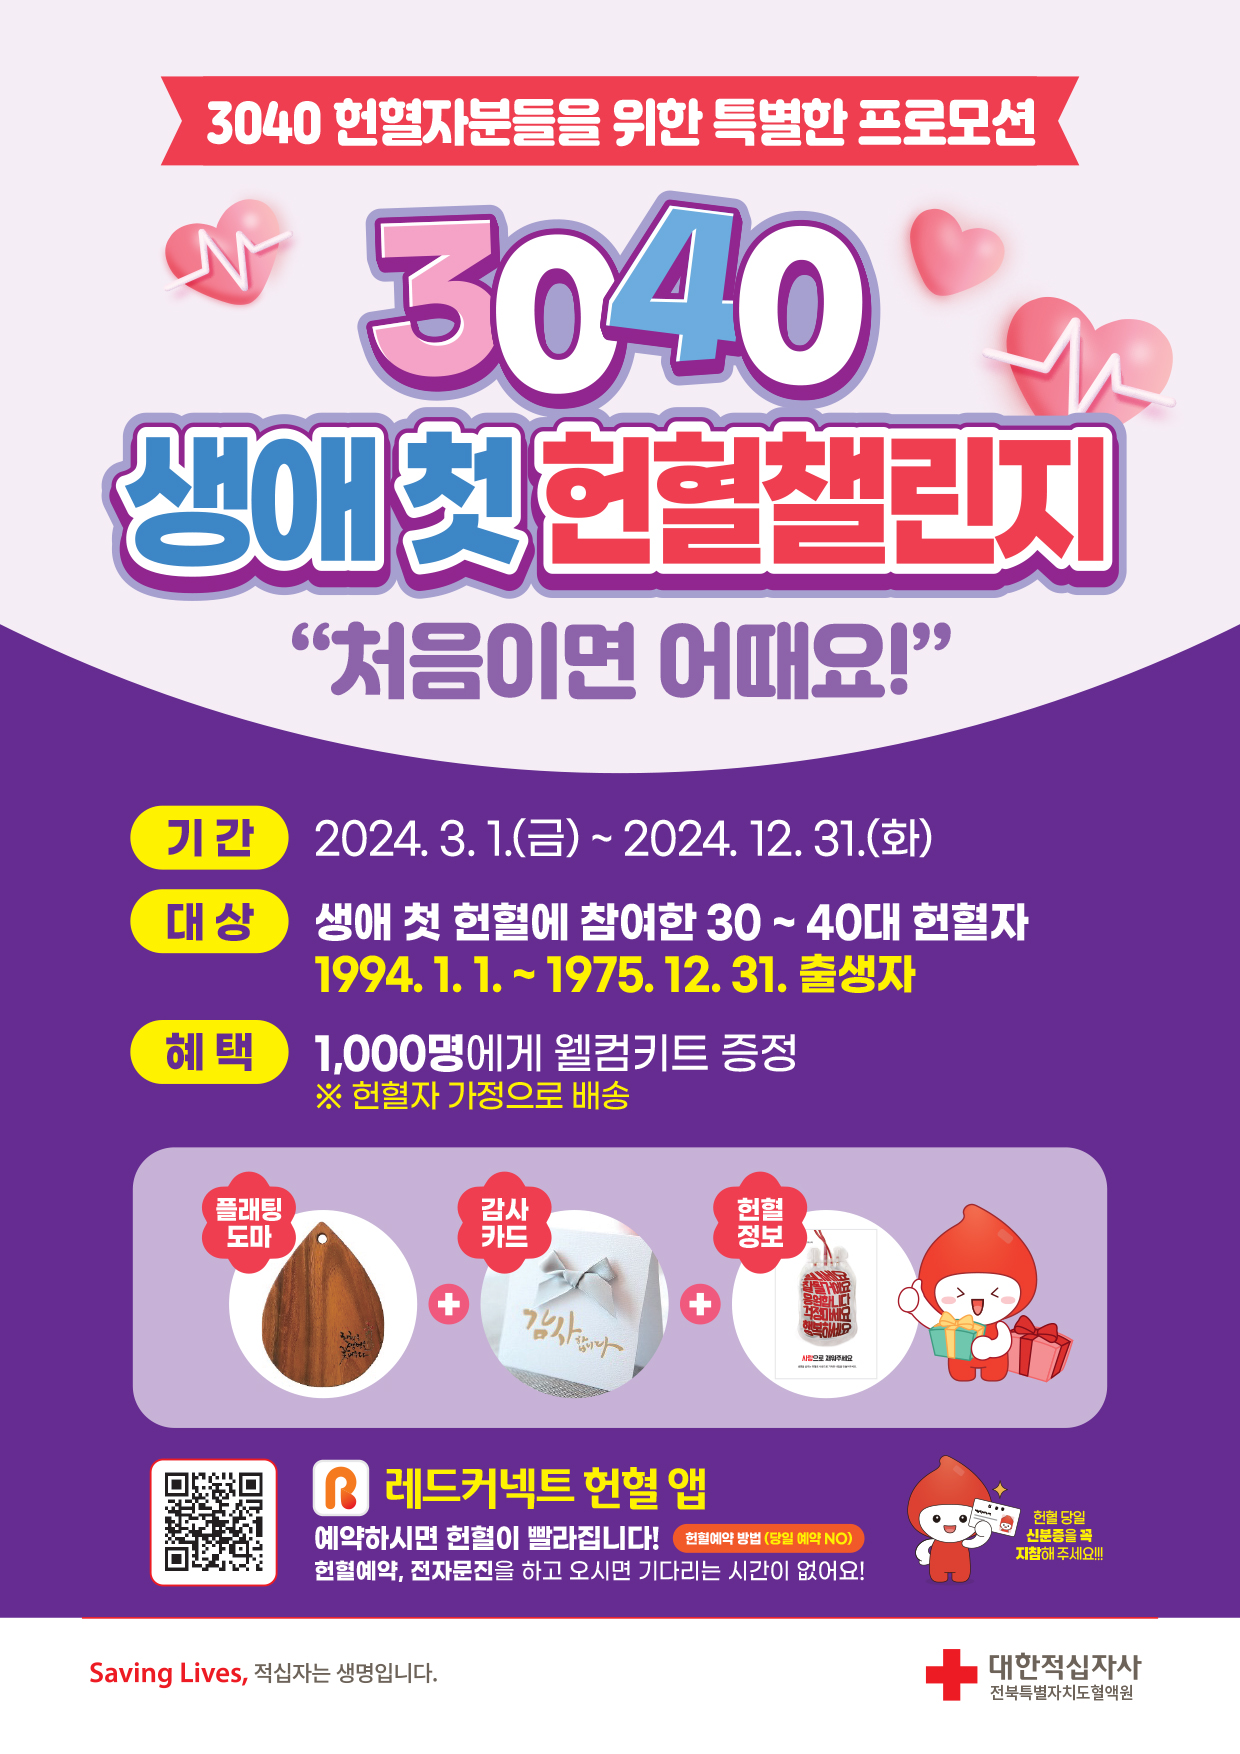 (전북특별차치도혈액원)  3040 생애 첫 헌혈챌린지 프로모션 진행